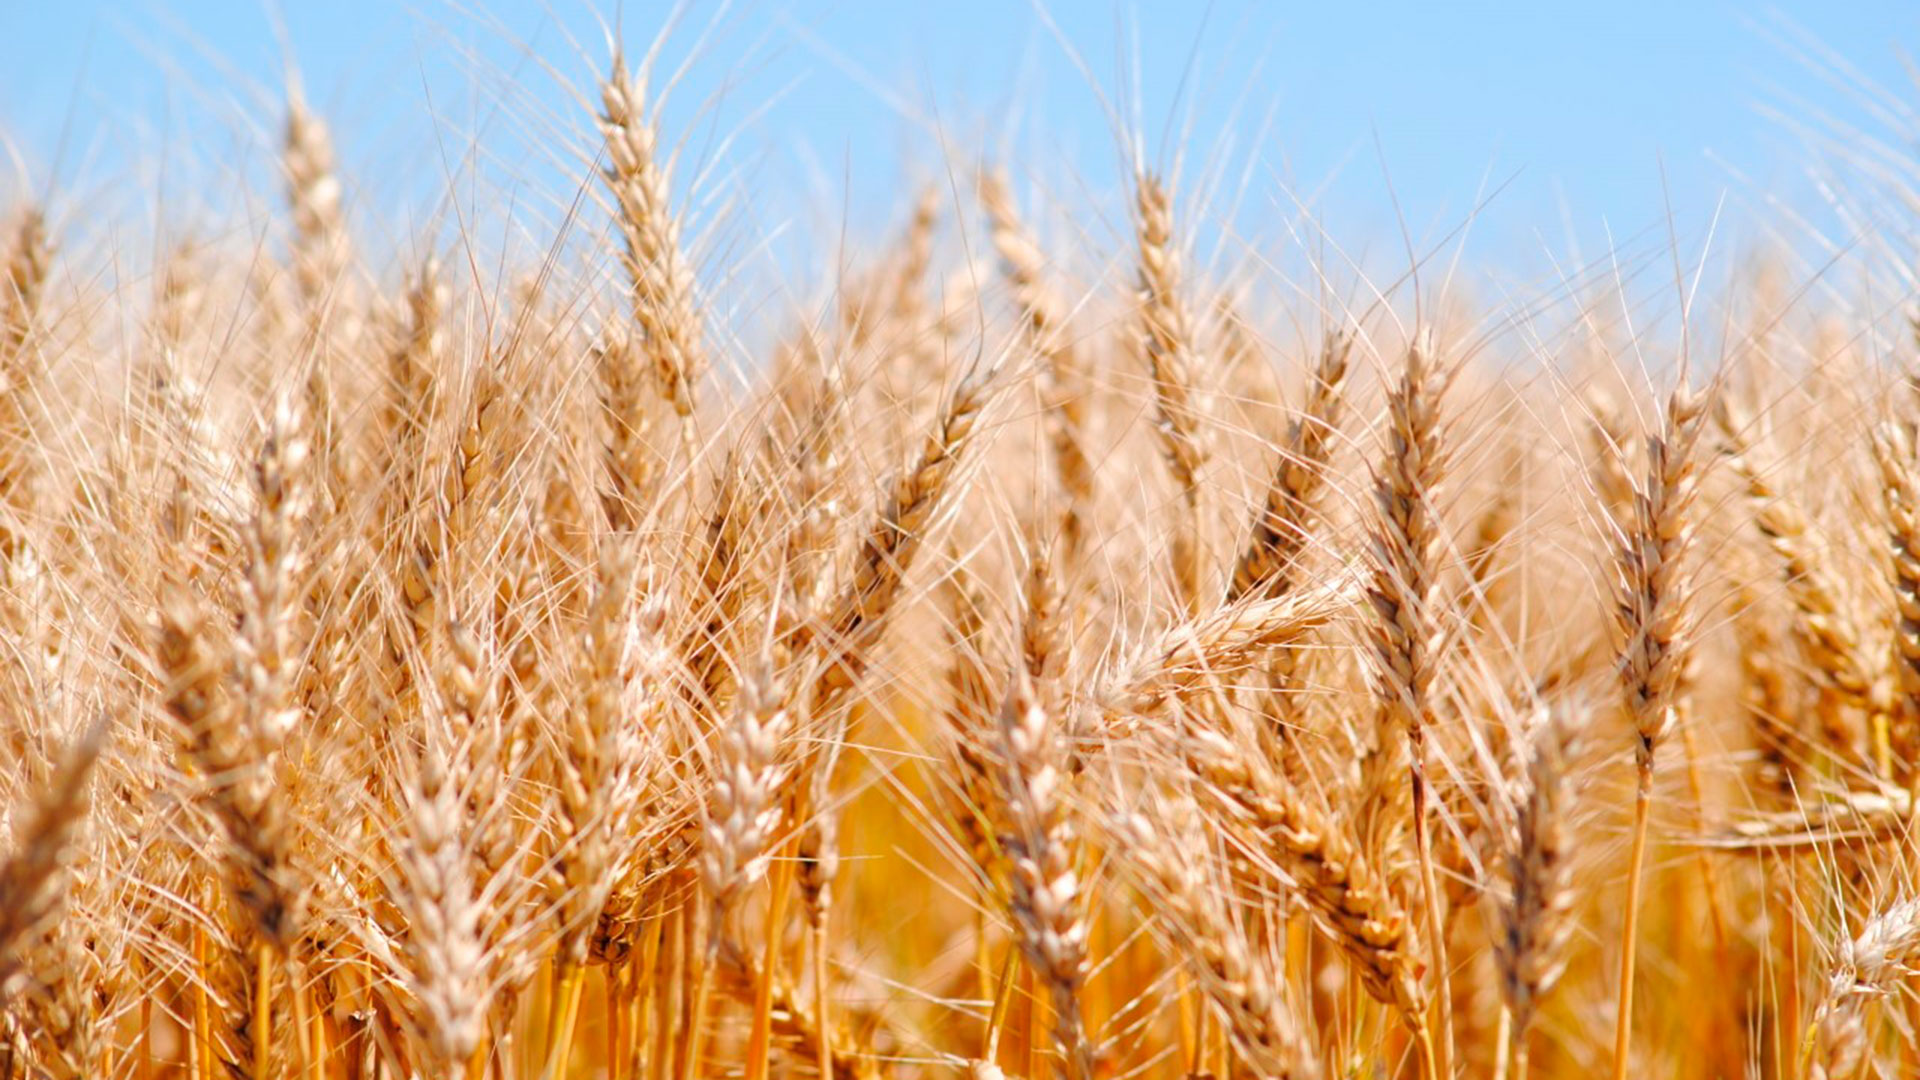 La revancha del trigo: el campo se enfoca en la próxima campaña del cereal y en dejar atrás el desastre productivo de la sequía